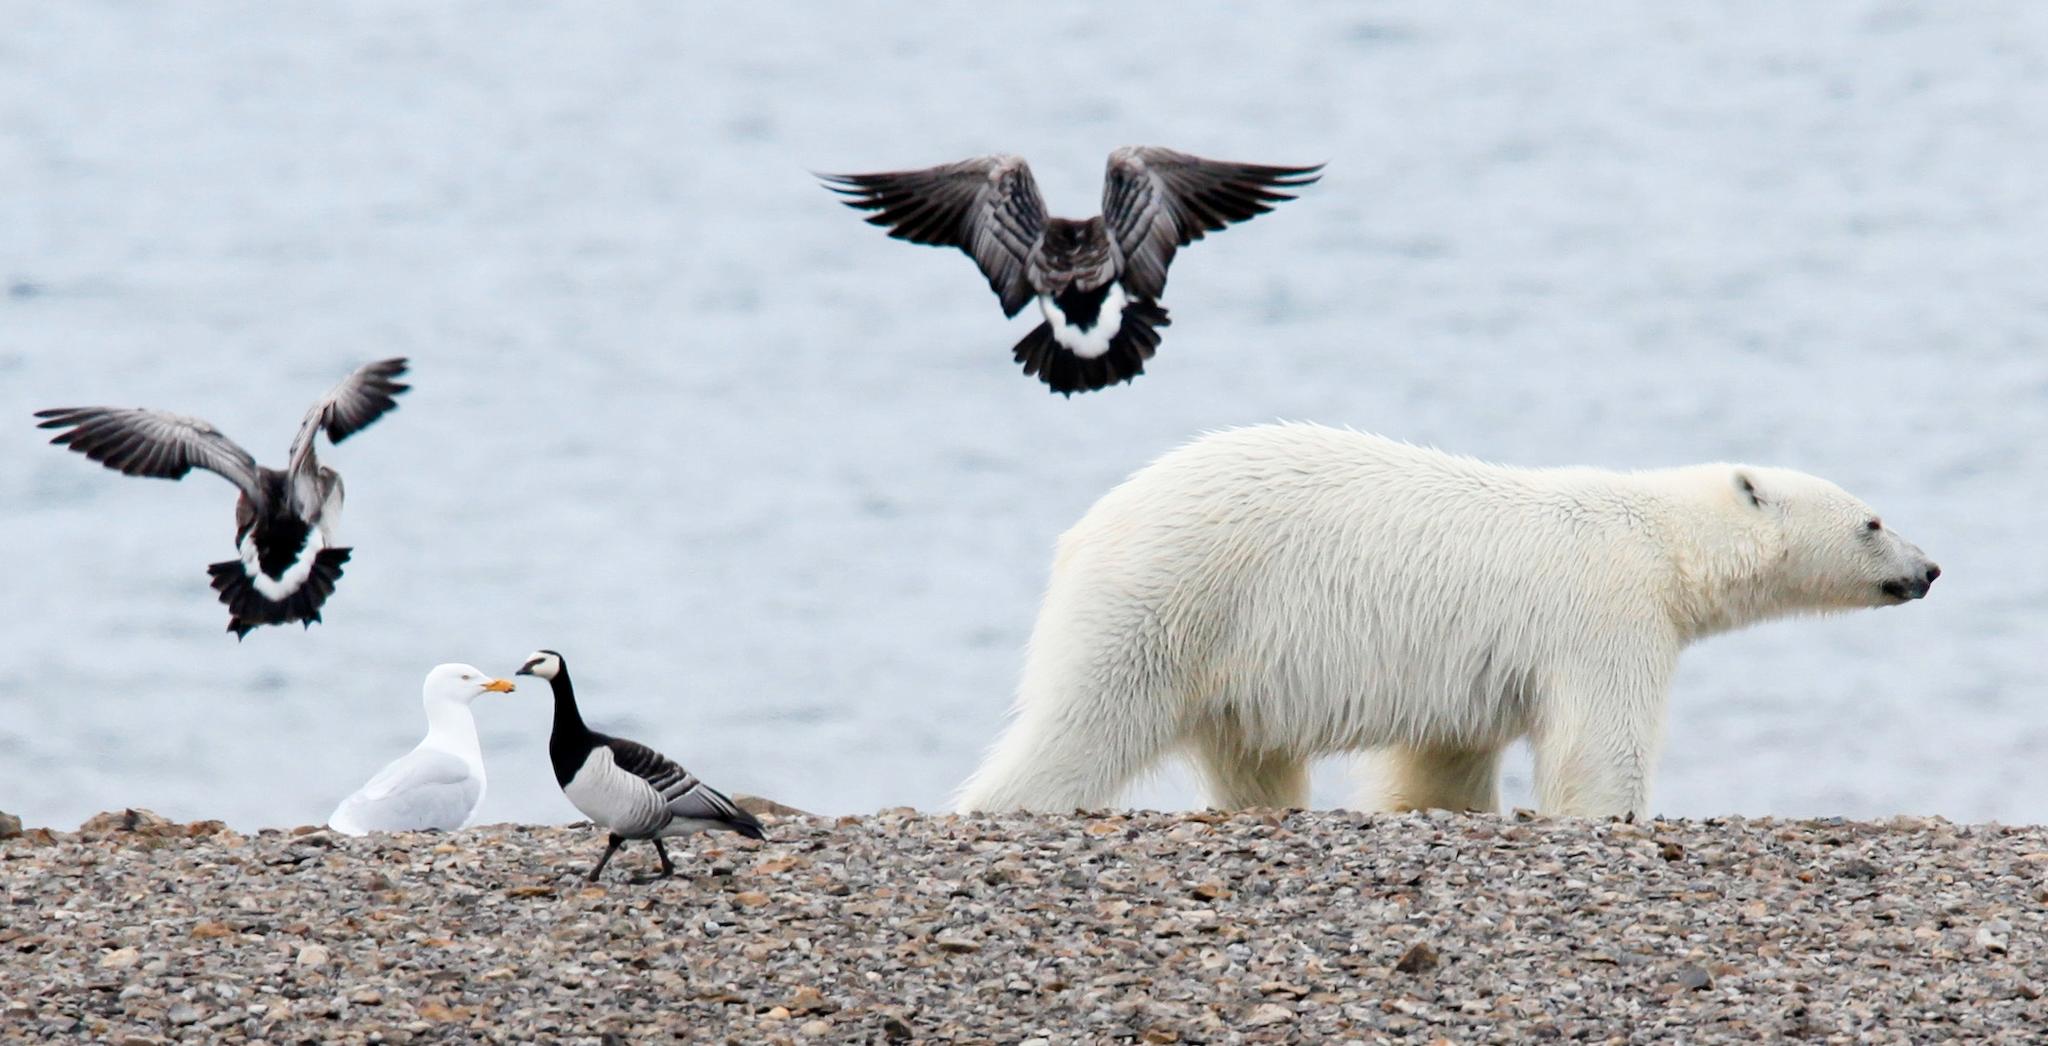 Fjordene på Svalbard har vært isfritt i flere år allerede. Mange isbjørn sliter når sjøen også nord for øygruppen oftere er uten is om sommeren. Omtrent 300 bjørn holder seg på Svalbard hele året, og har fått nye matvaner. Fugleegg i stedet for sel.